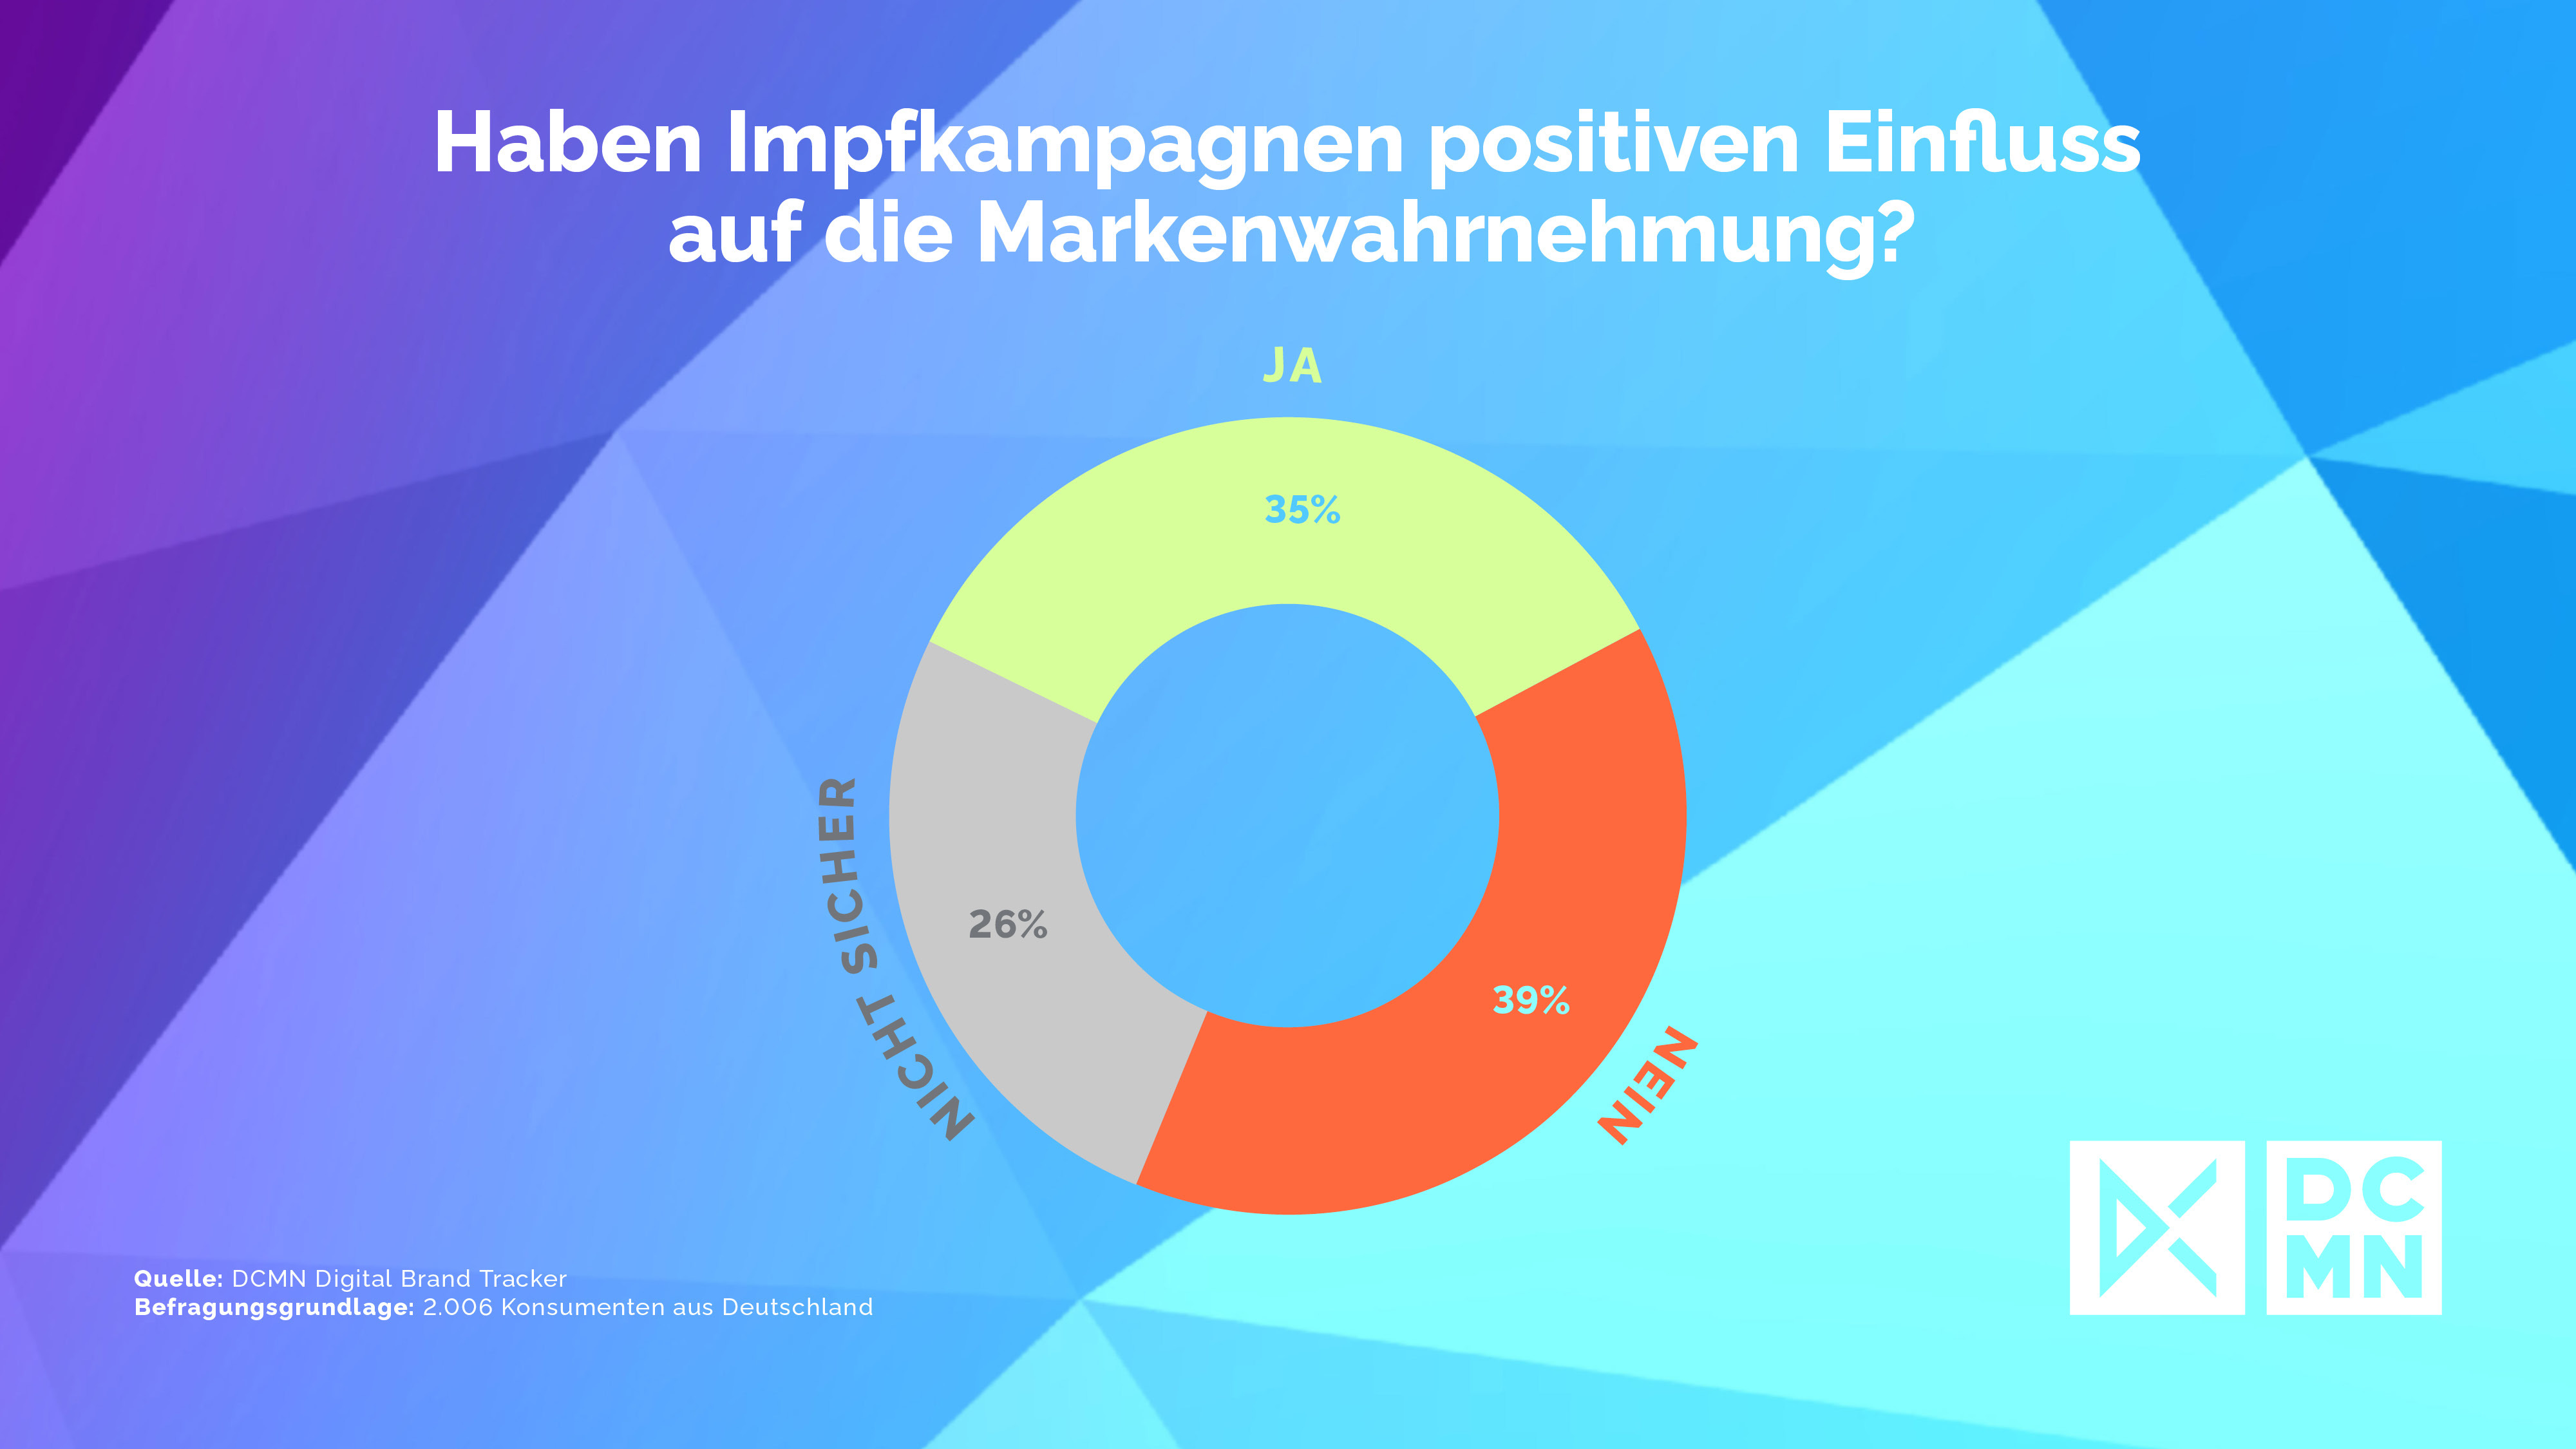 35 % der Deutschen glauben an eine positive Markenwahrnehmung durch Impfkampagnen - Quelle: DCMN